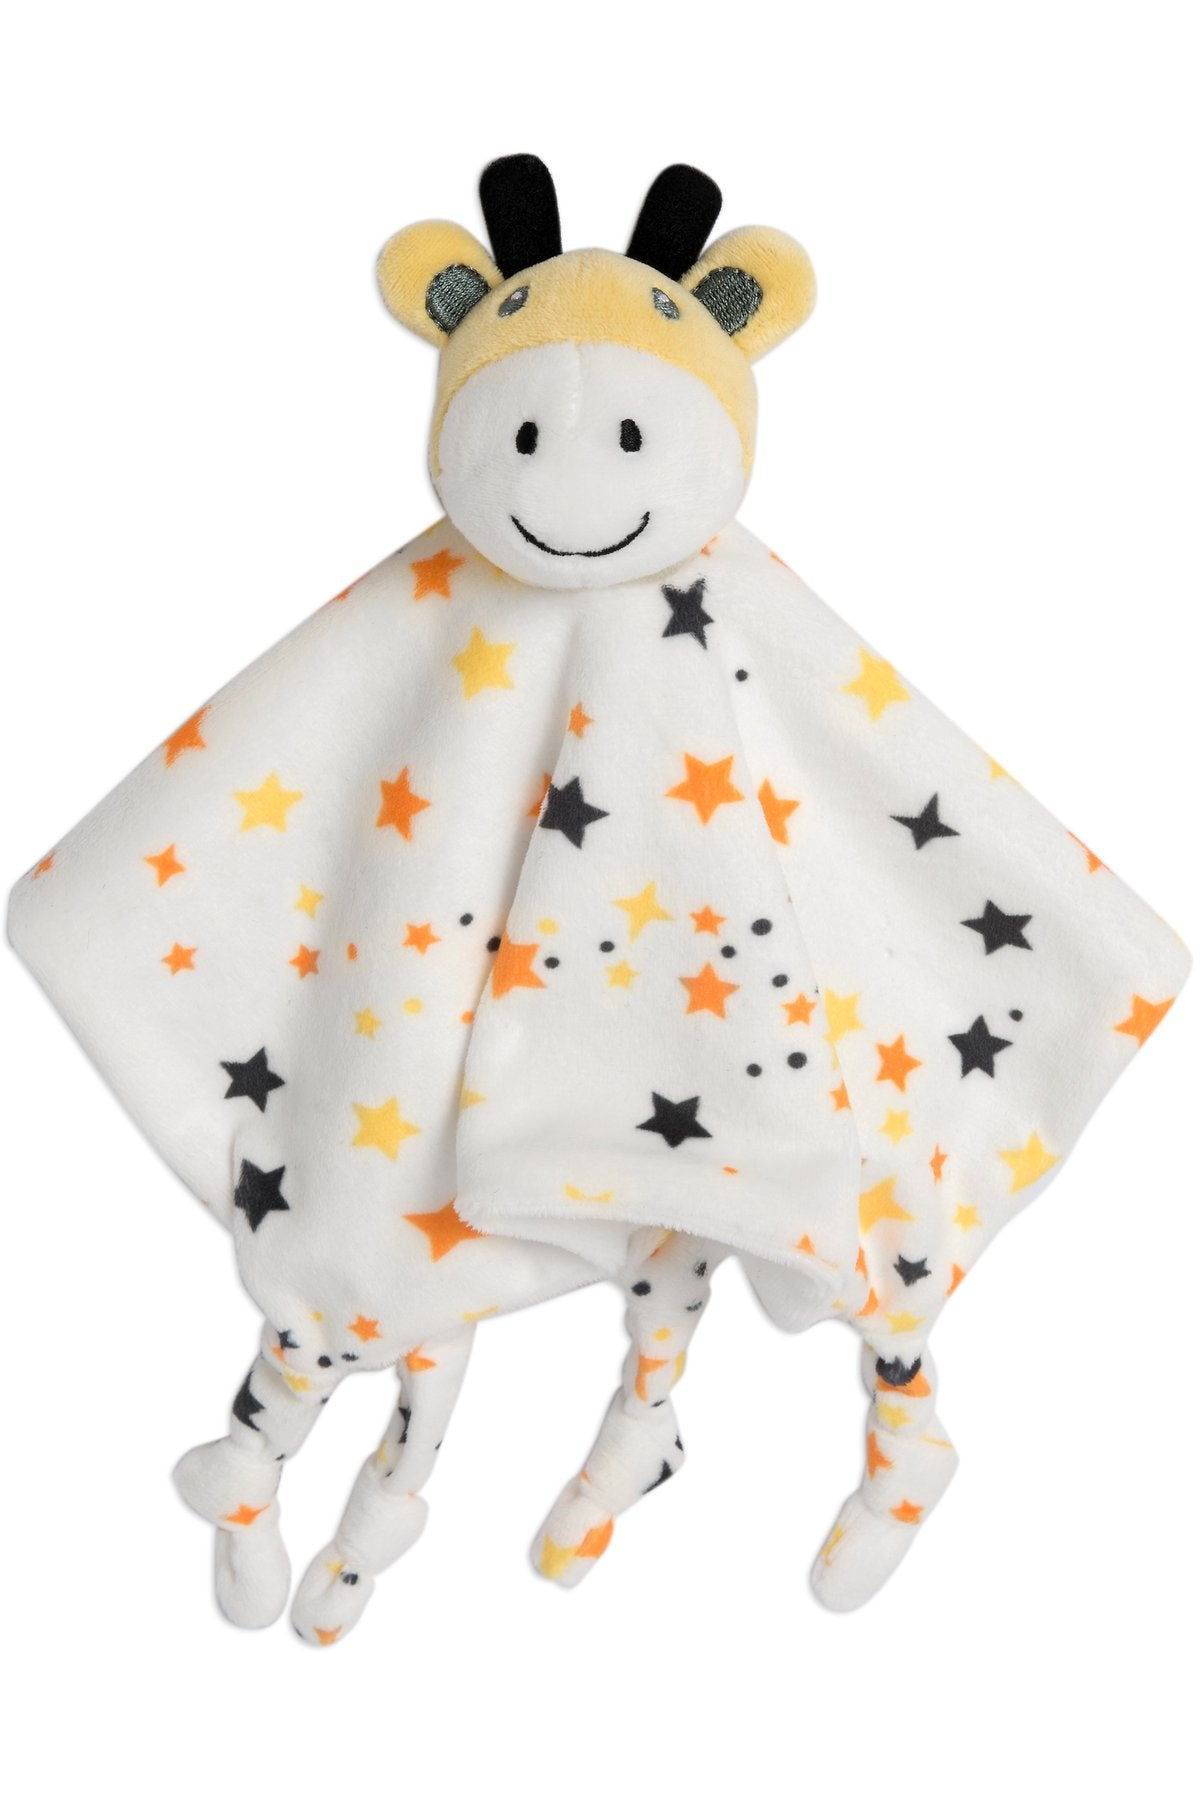 Little Linen Lovie Comforter - Giraffe Star